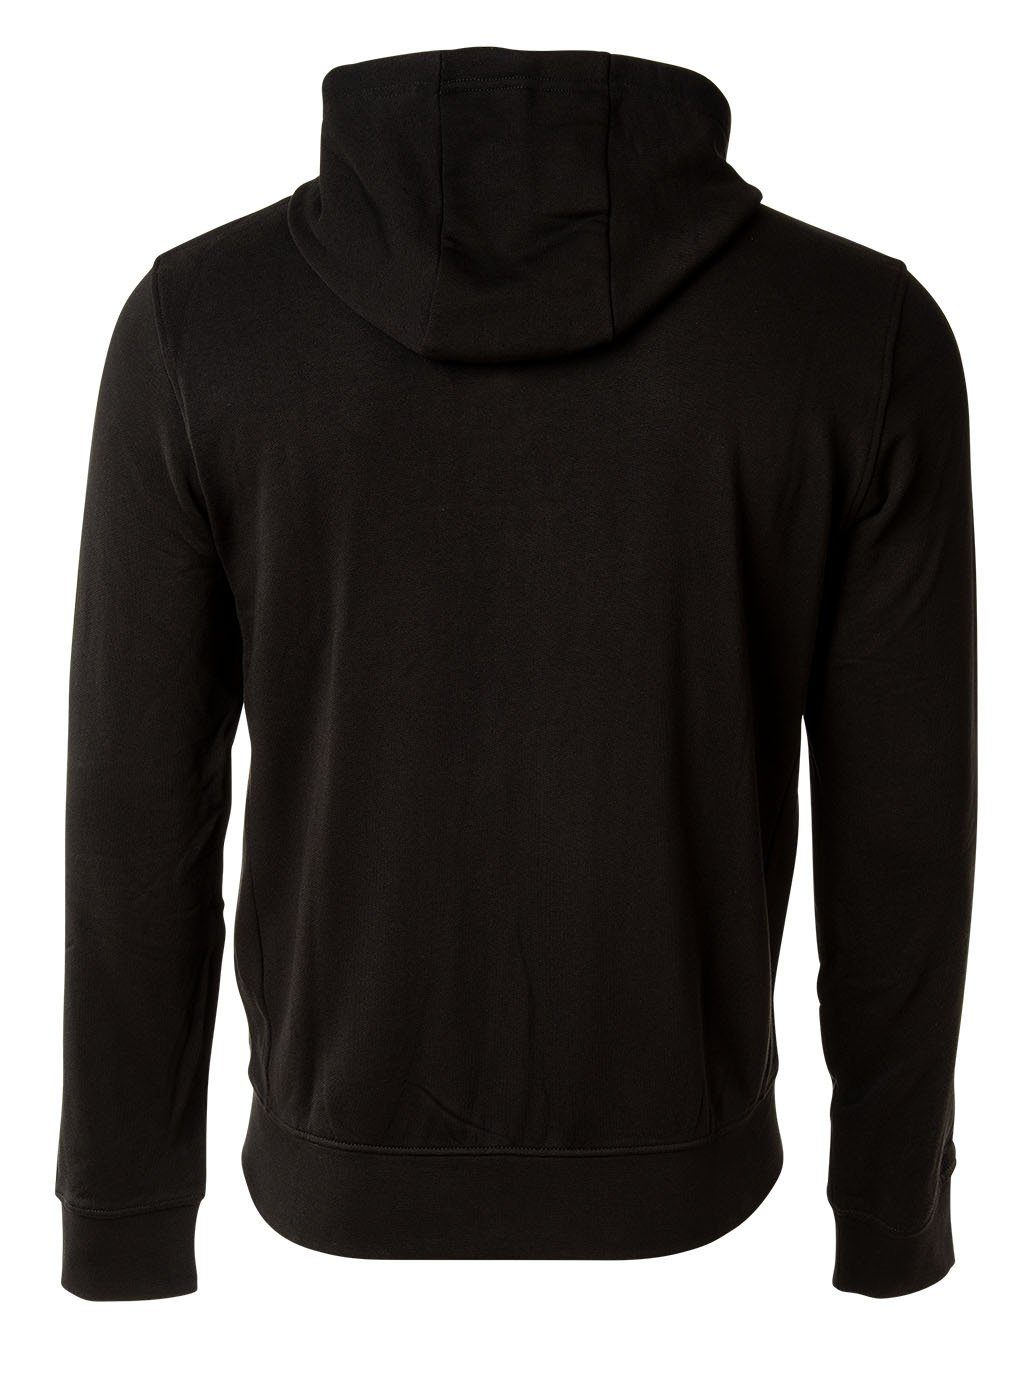 ARMANI EXCHANGE Sweatshirt Herren Sweatshirt Logo Schwarz - Sweatshirtjacke